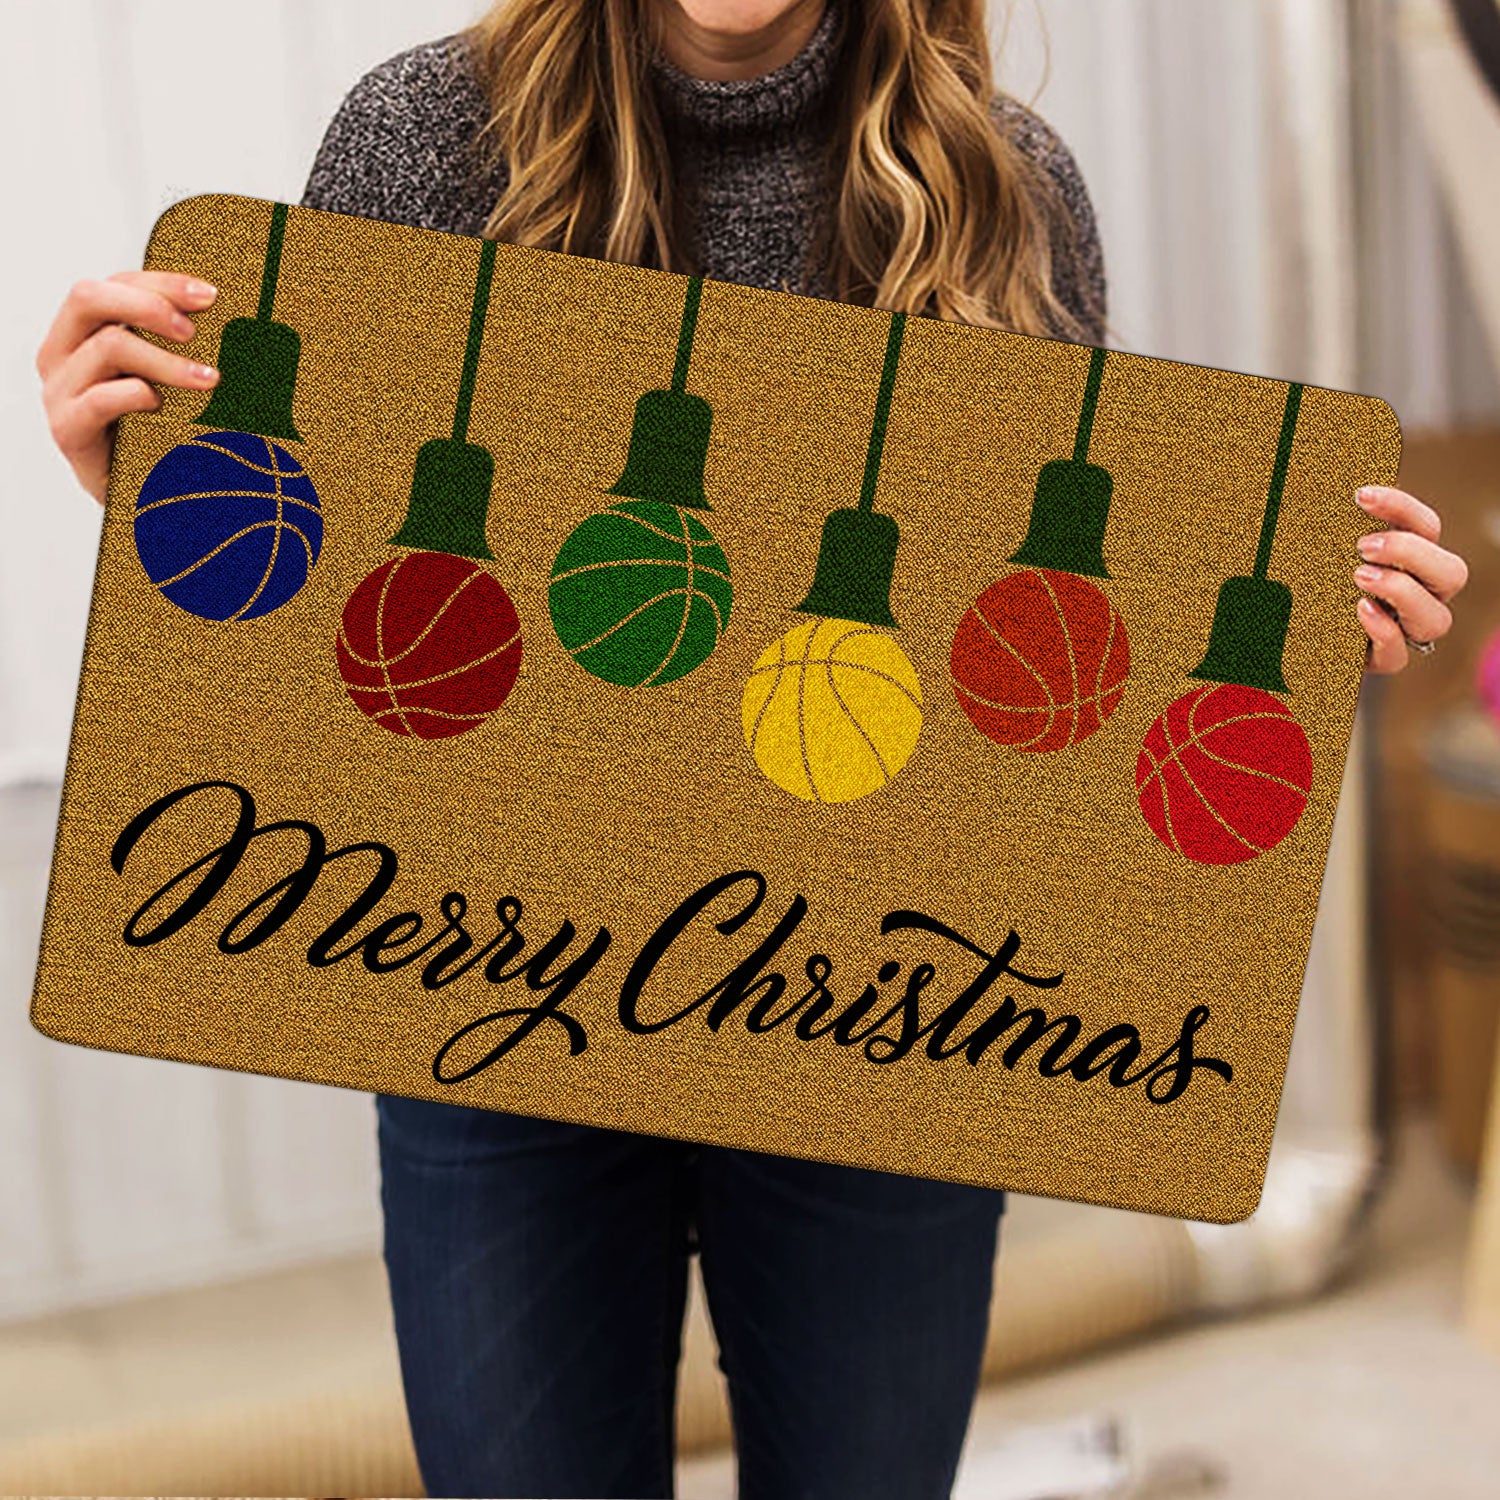 Ohaprints-Doormat-Outdoor-Indoor-Merry-Christmas-Basketball-String-Light-Xmas-Winter-Rubber-Door-Mat-7-